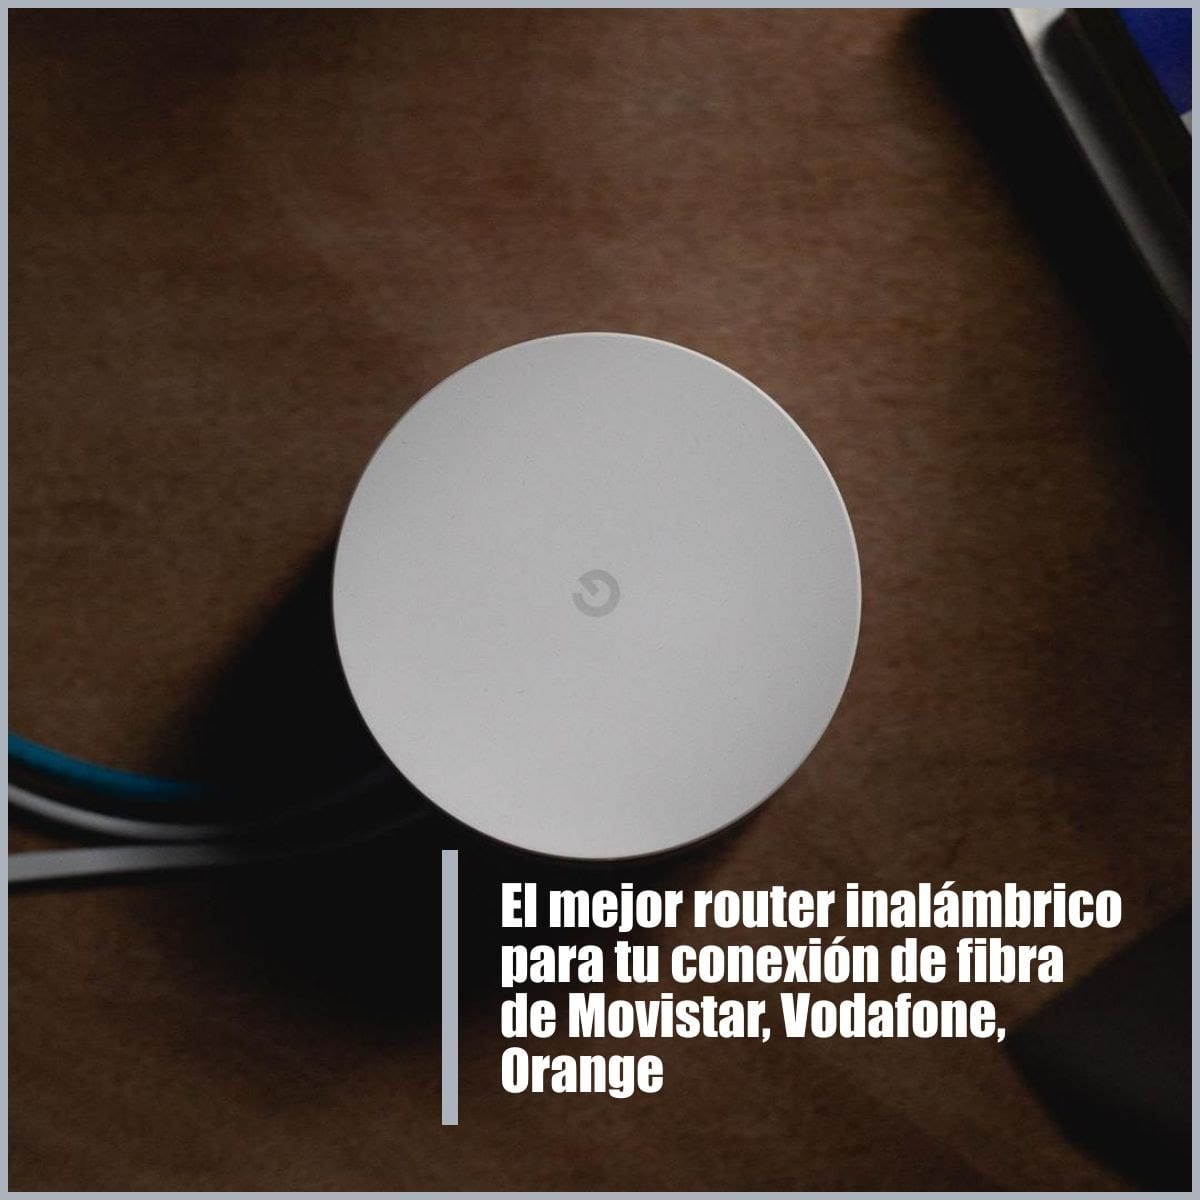 El mejor router inalámbrico para tu conexión de fibra de Movistar, Vodafone, Orange